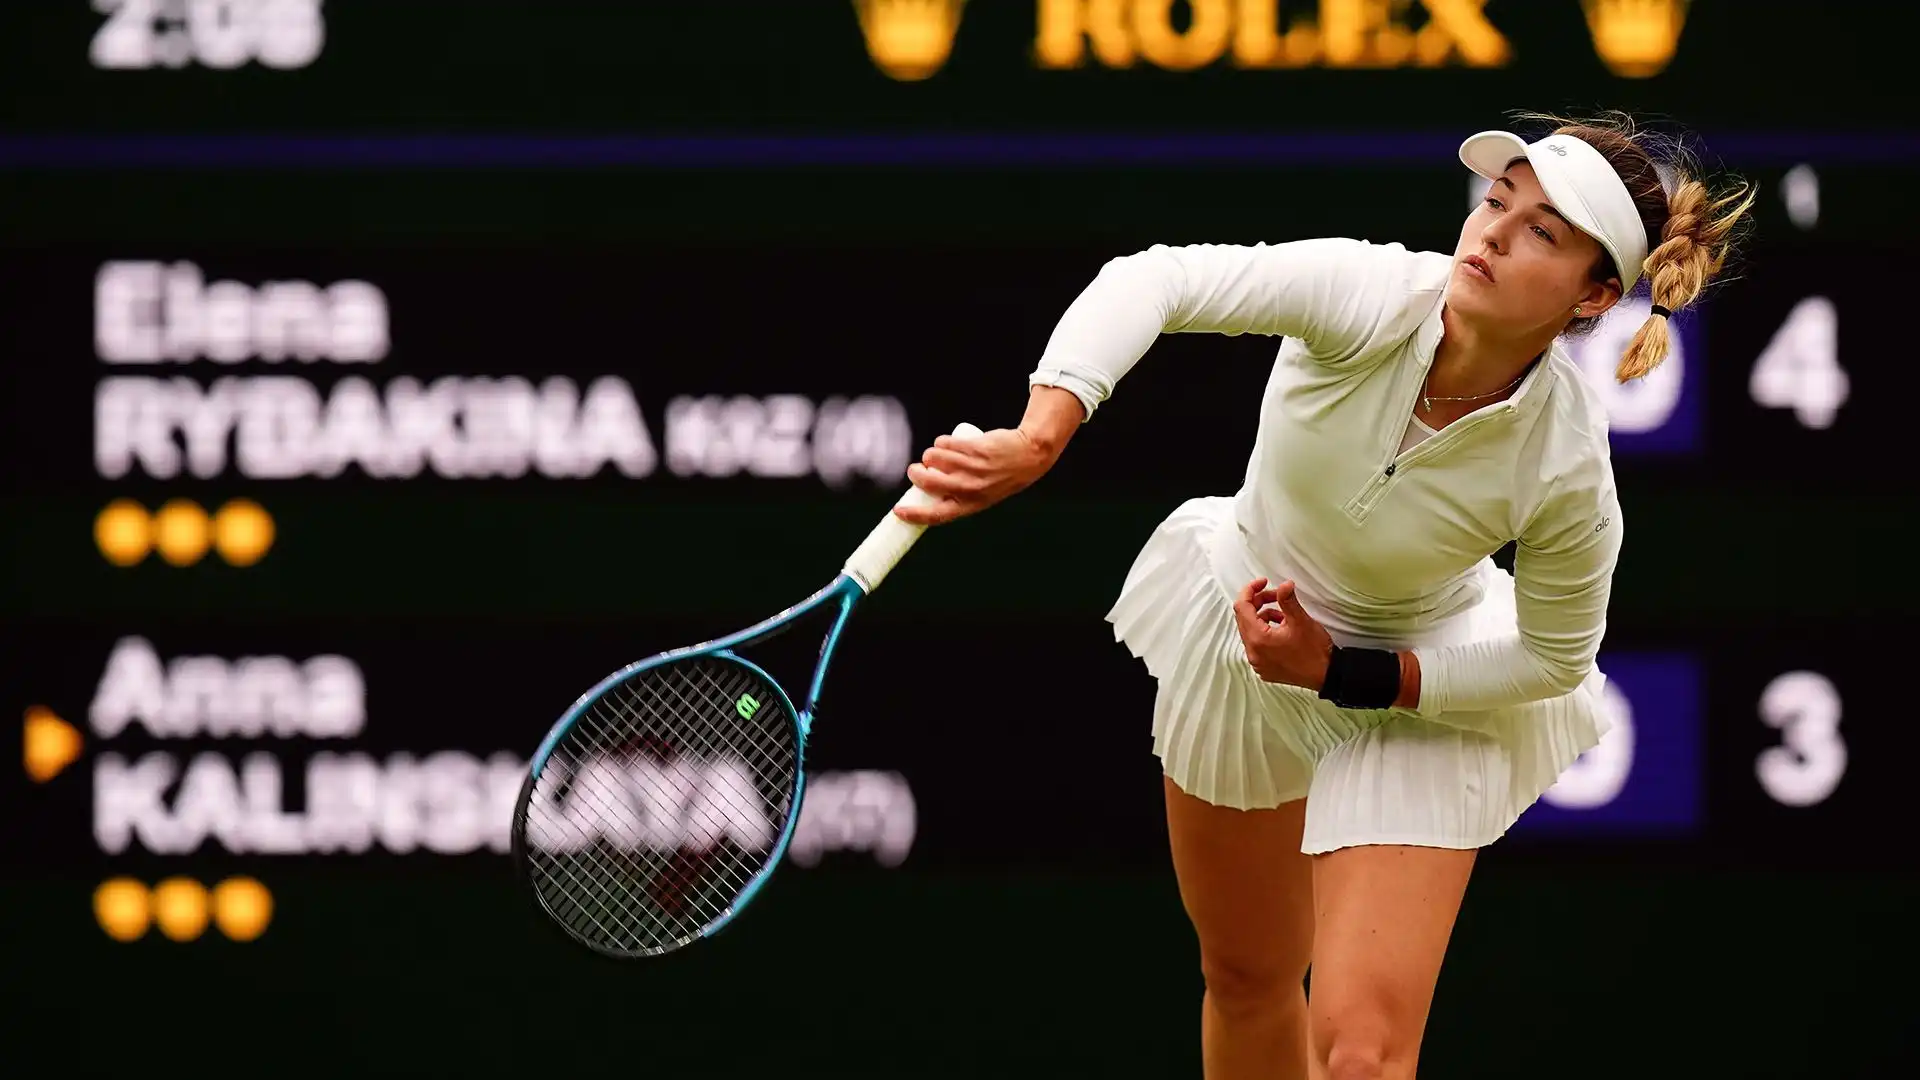 La tennista russa ha dovuto ritirarsi nel corso del match con Elena Rybakina a causa di un problema fisico